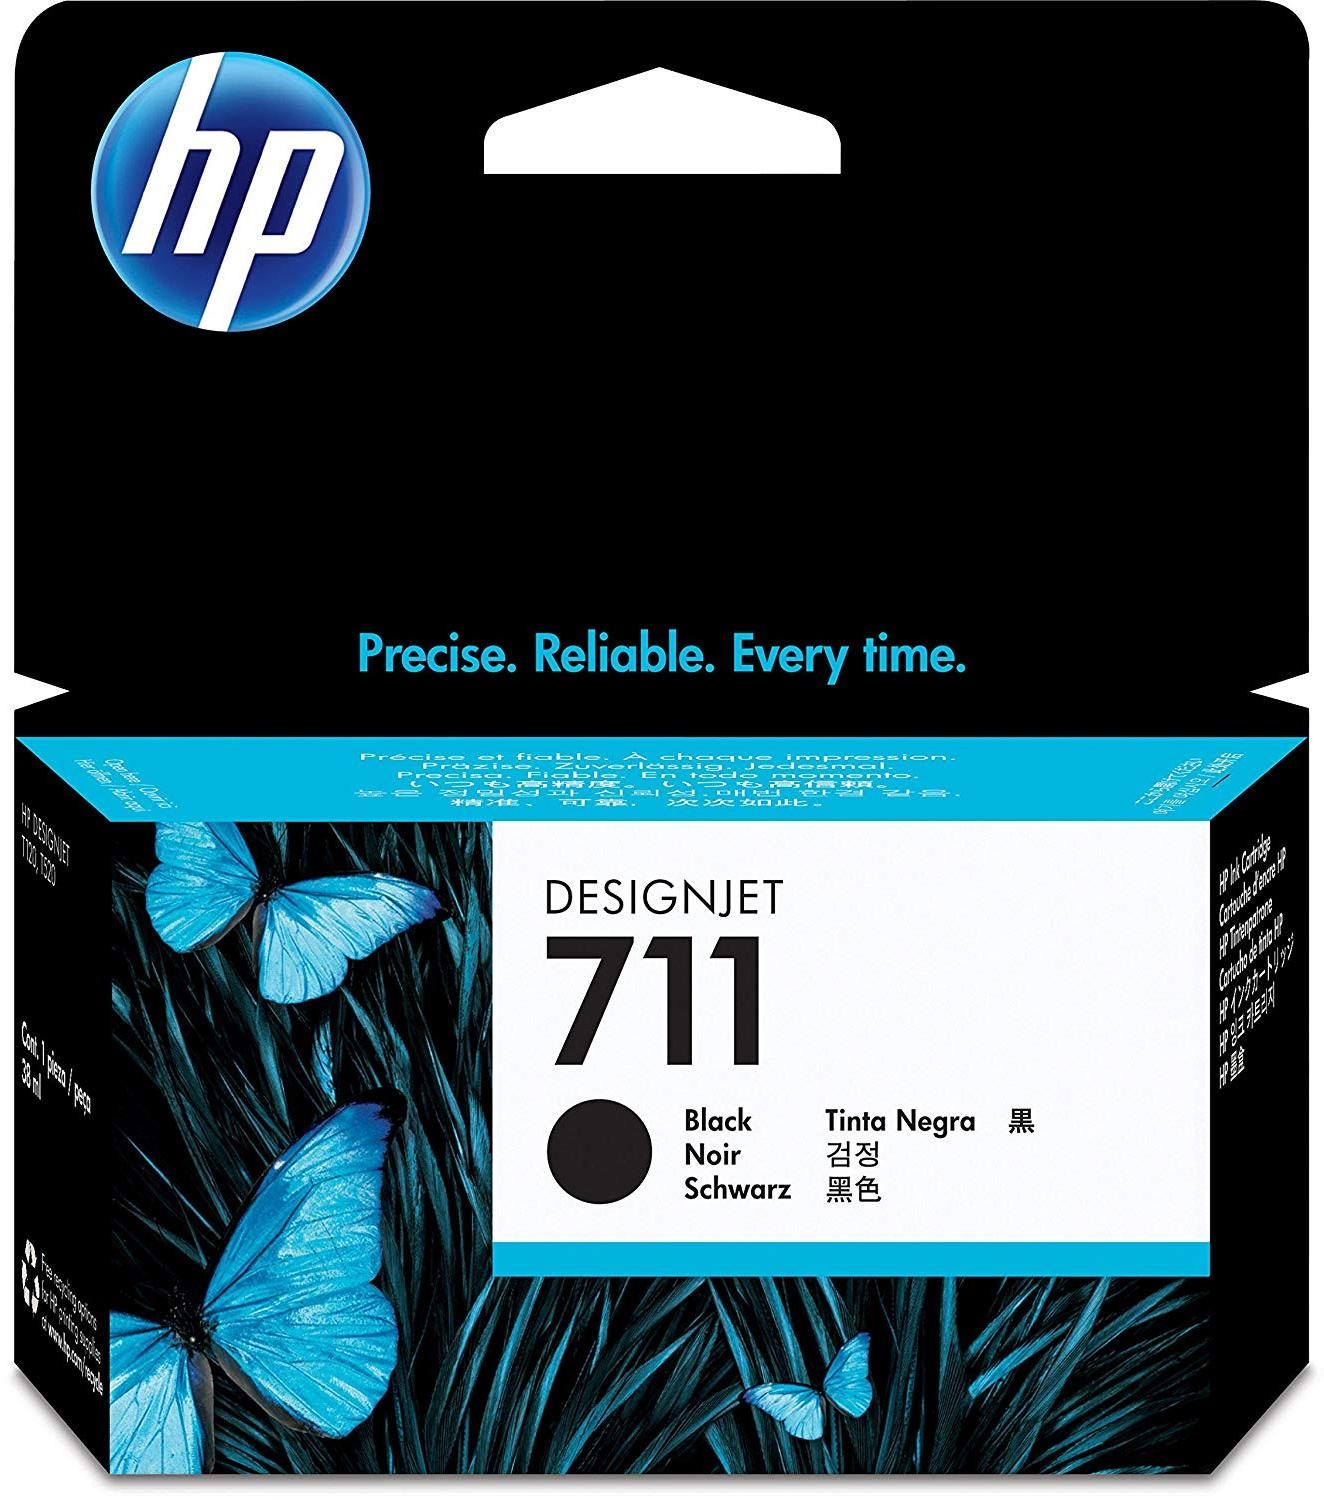 Cartouche d'encre HP 912 XL (Noir) à prix bas